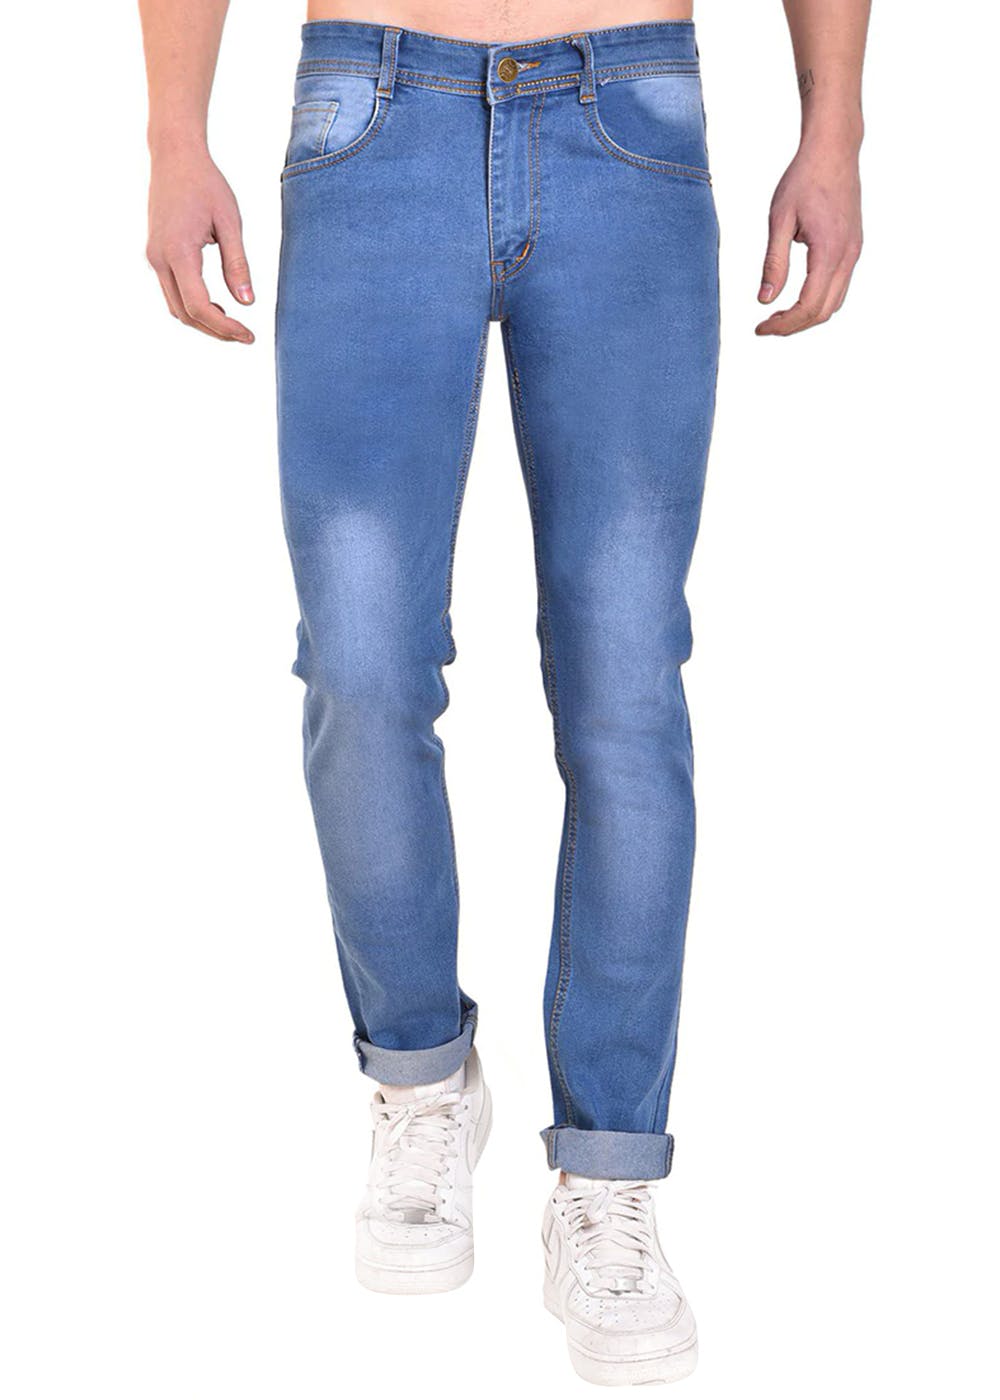 Levis 501 Button Fly Jeans Mens (Tag 30x30) Royal Cobalt Blue EUC | eBay